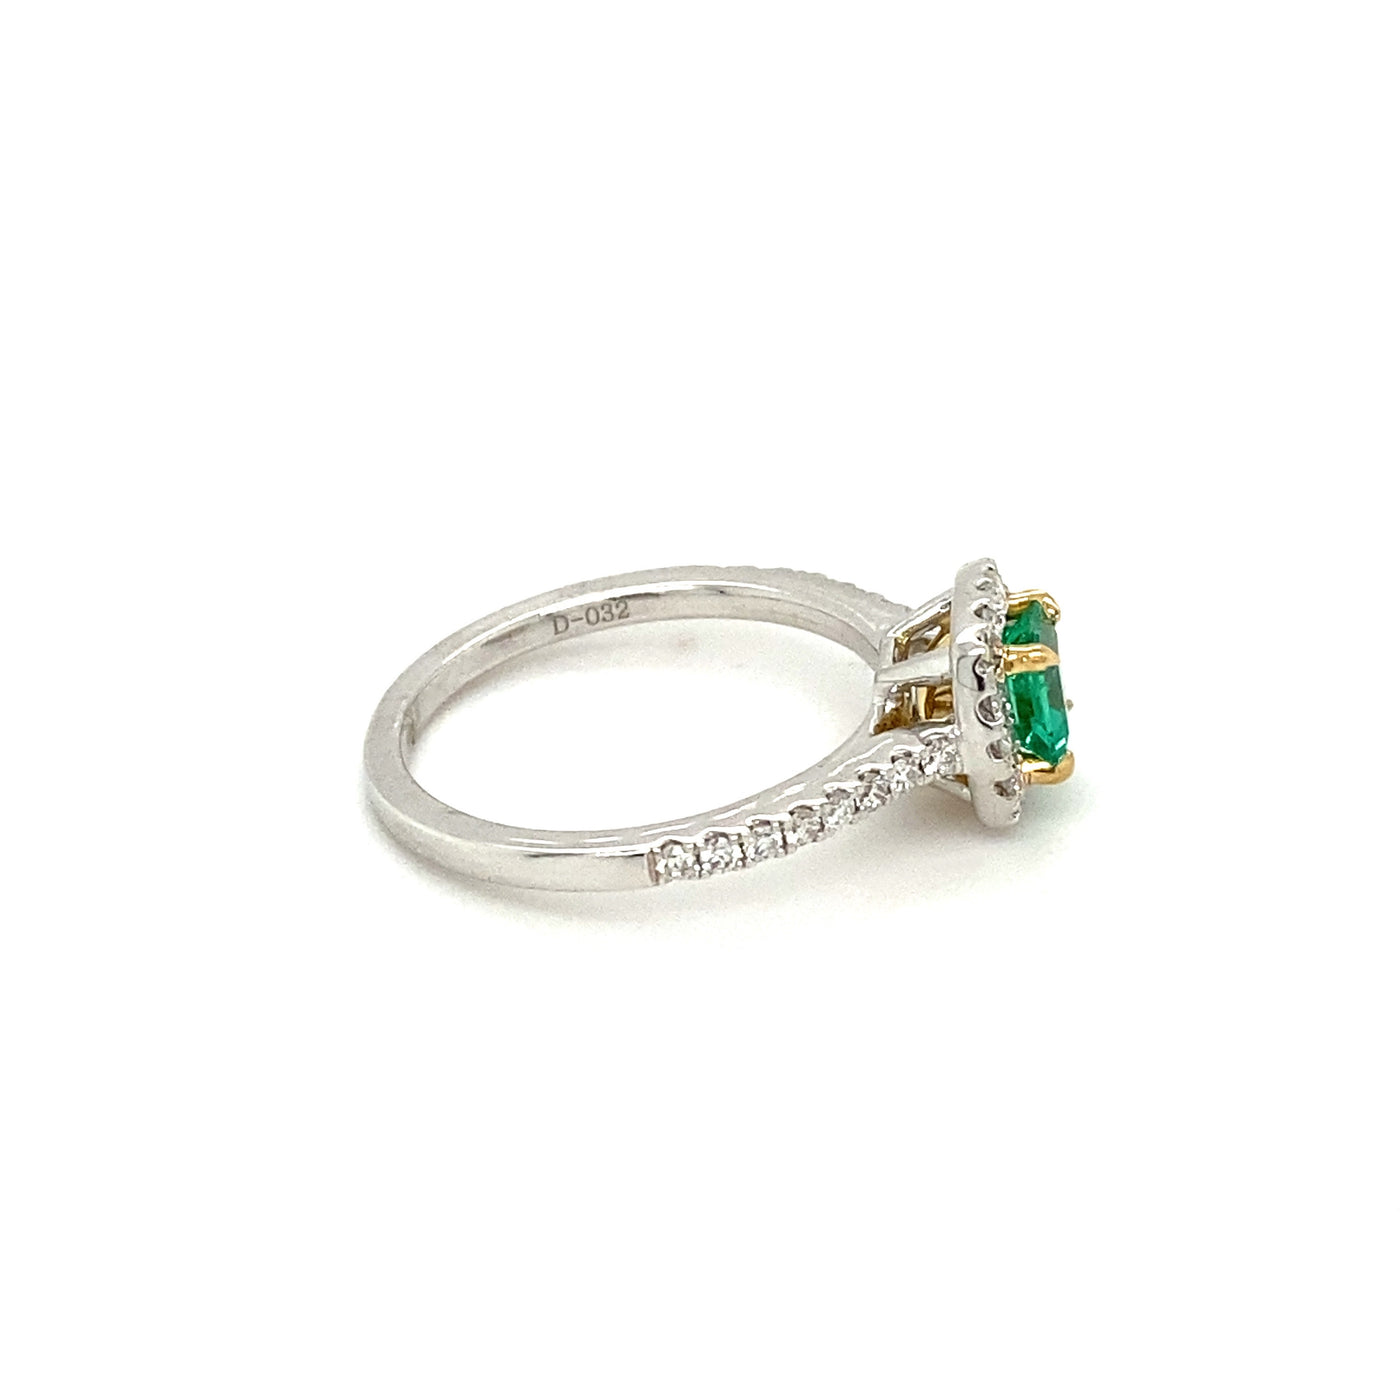 Asscher Cut Emerald and Pavé Diamond Ring